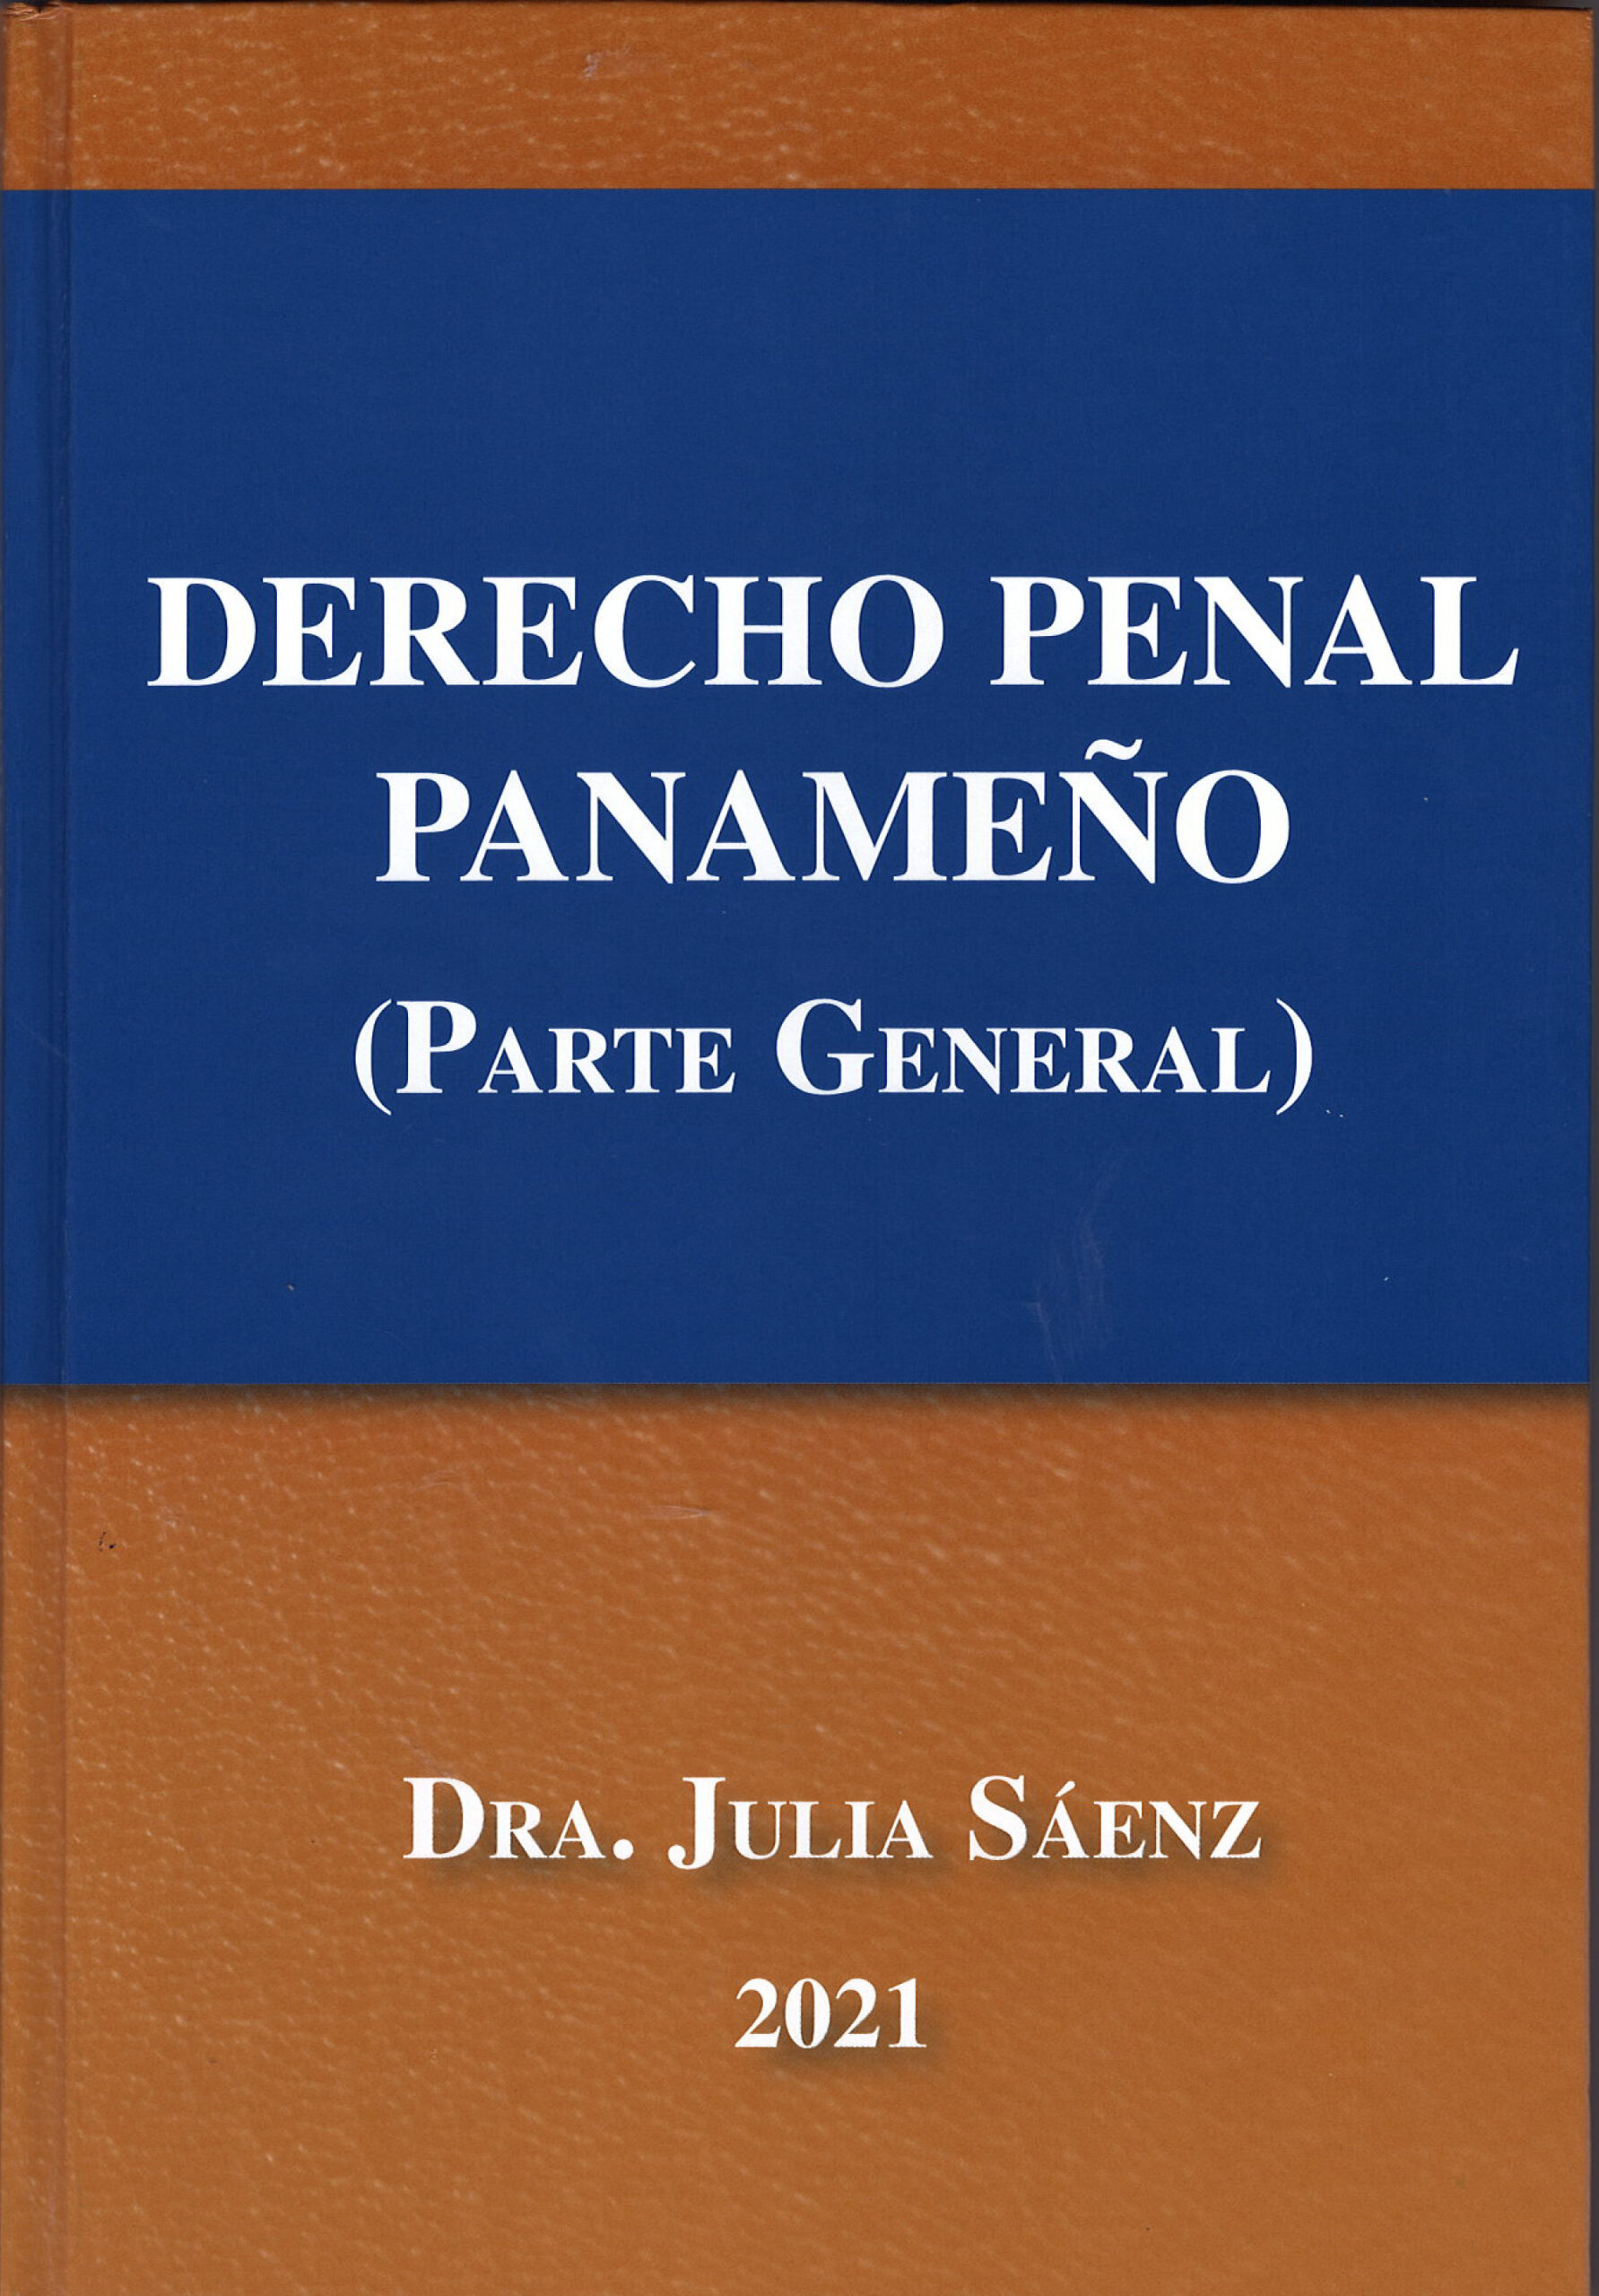 der_penal 2021